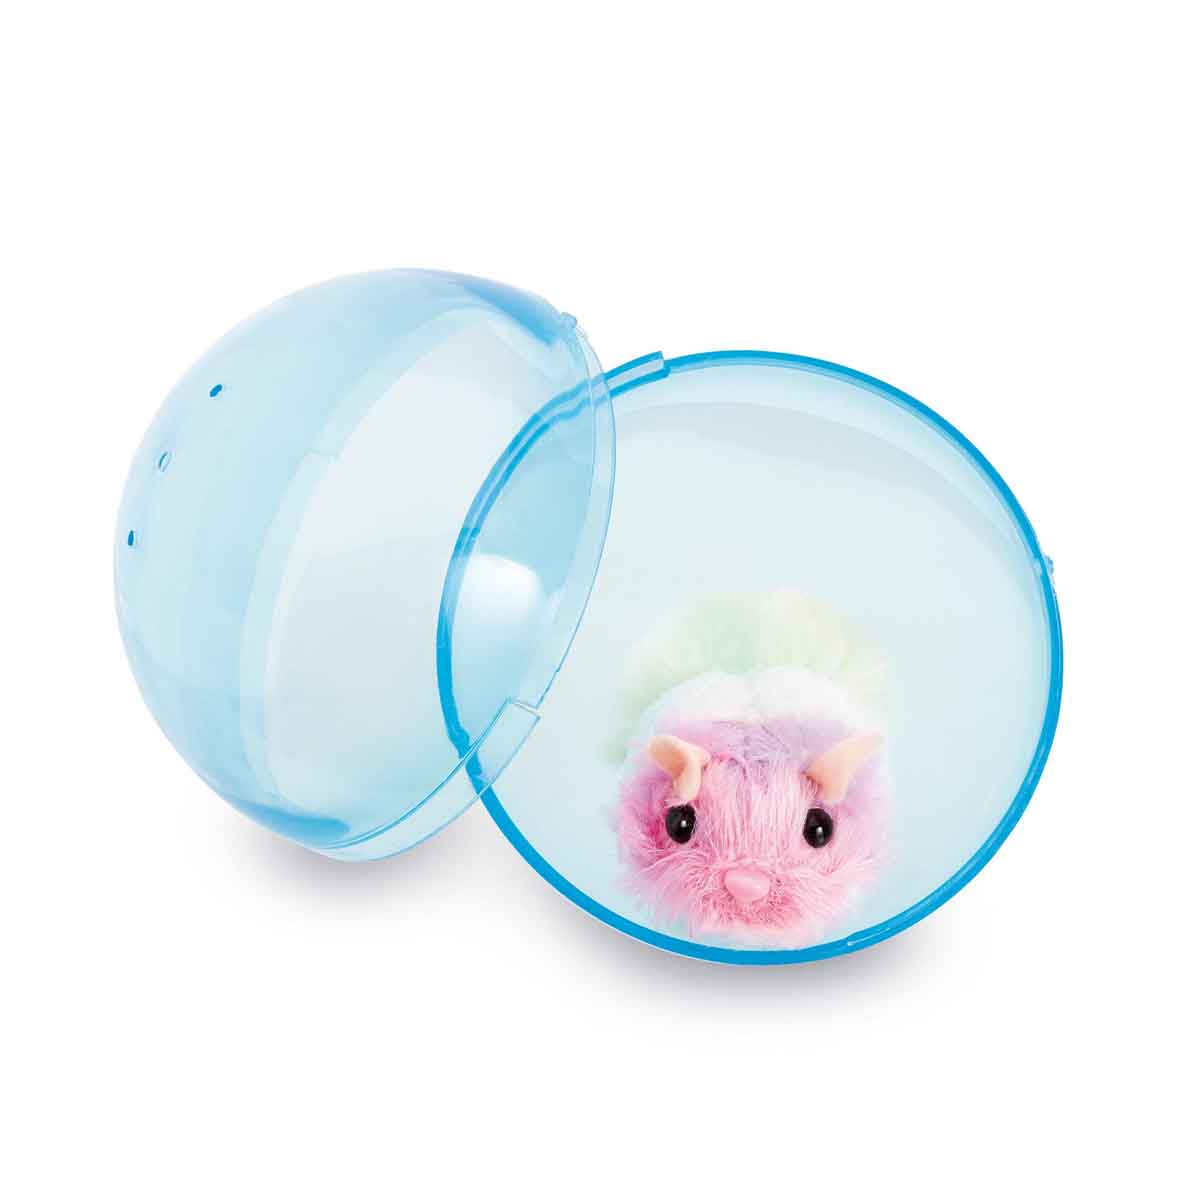 hamster de juguete, color gris: con ruedas y do - Compra venta en  todocoleccion